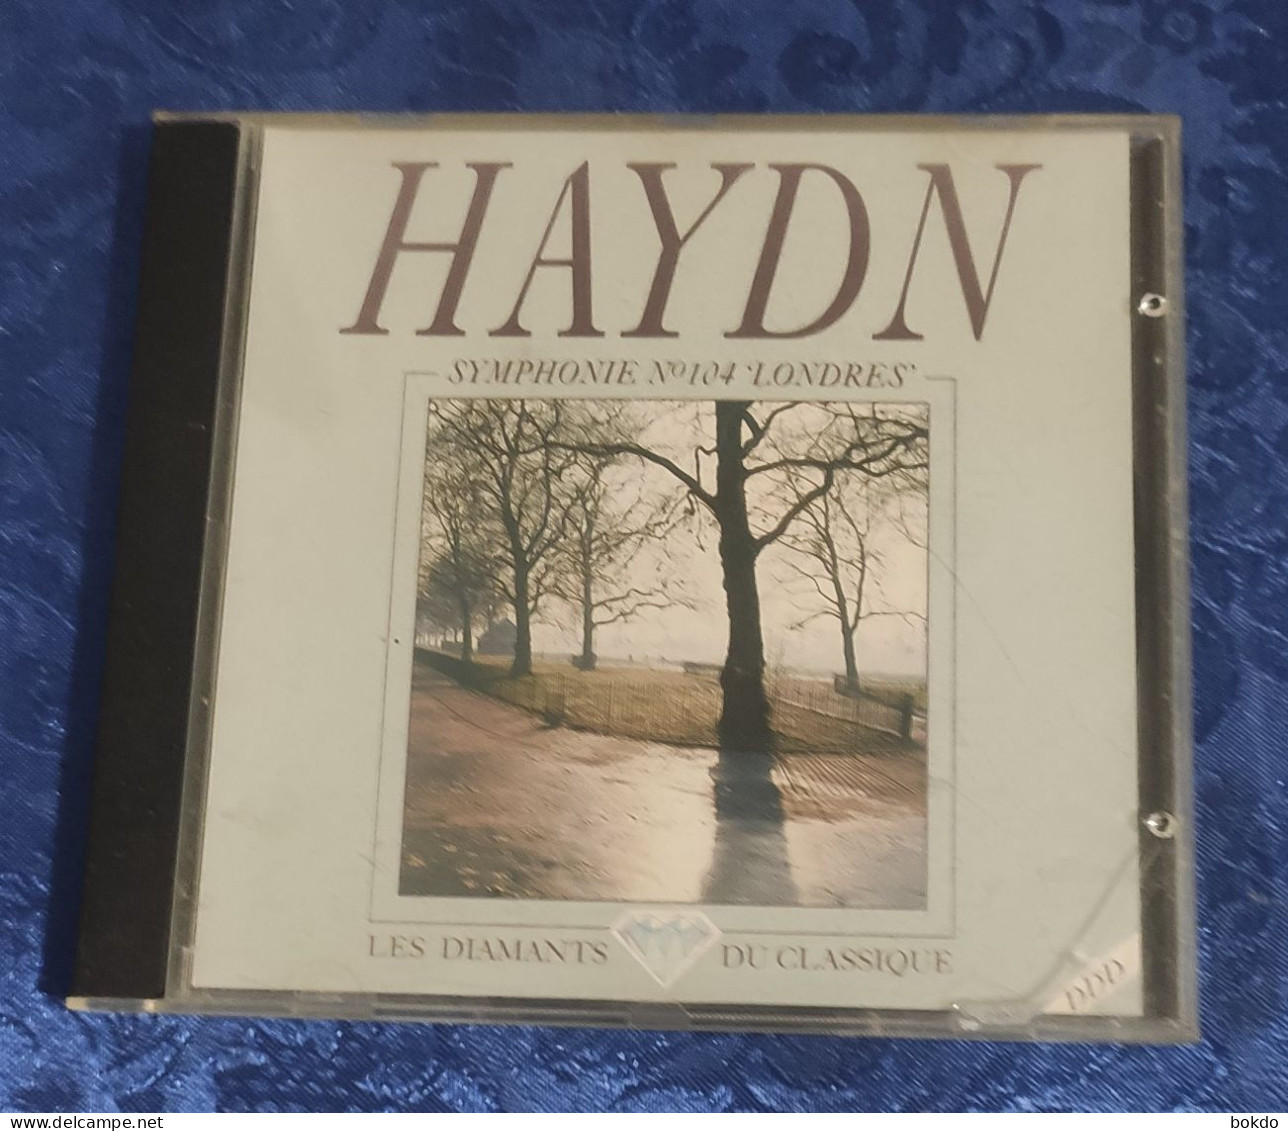 HAYDN - Symphonie N° 104 "londres" - Klassiekers